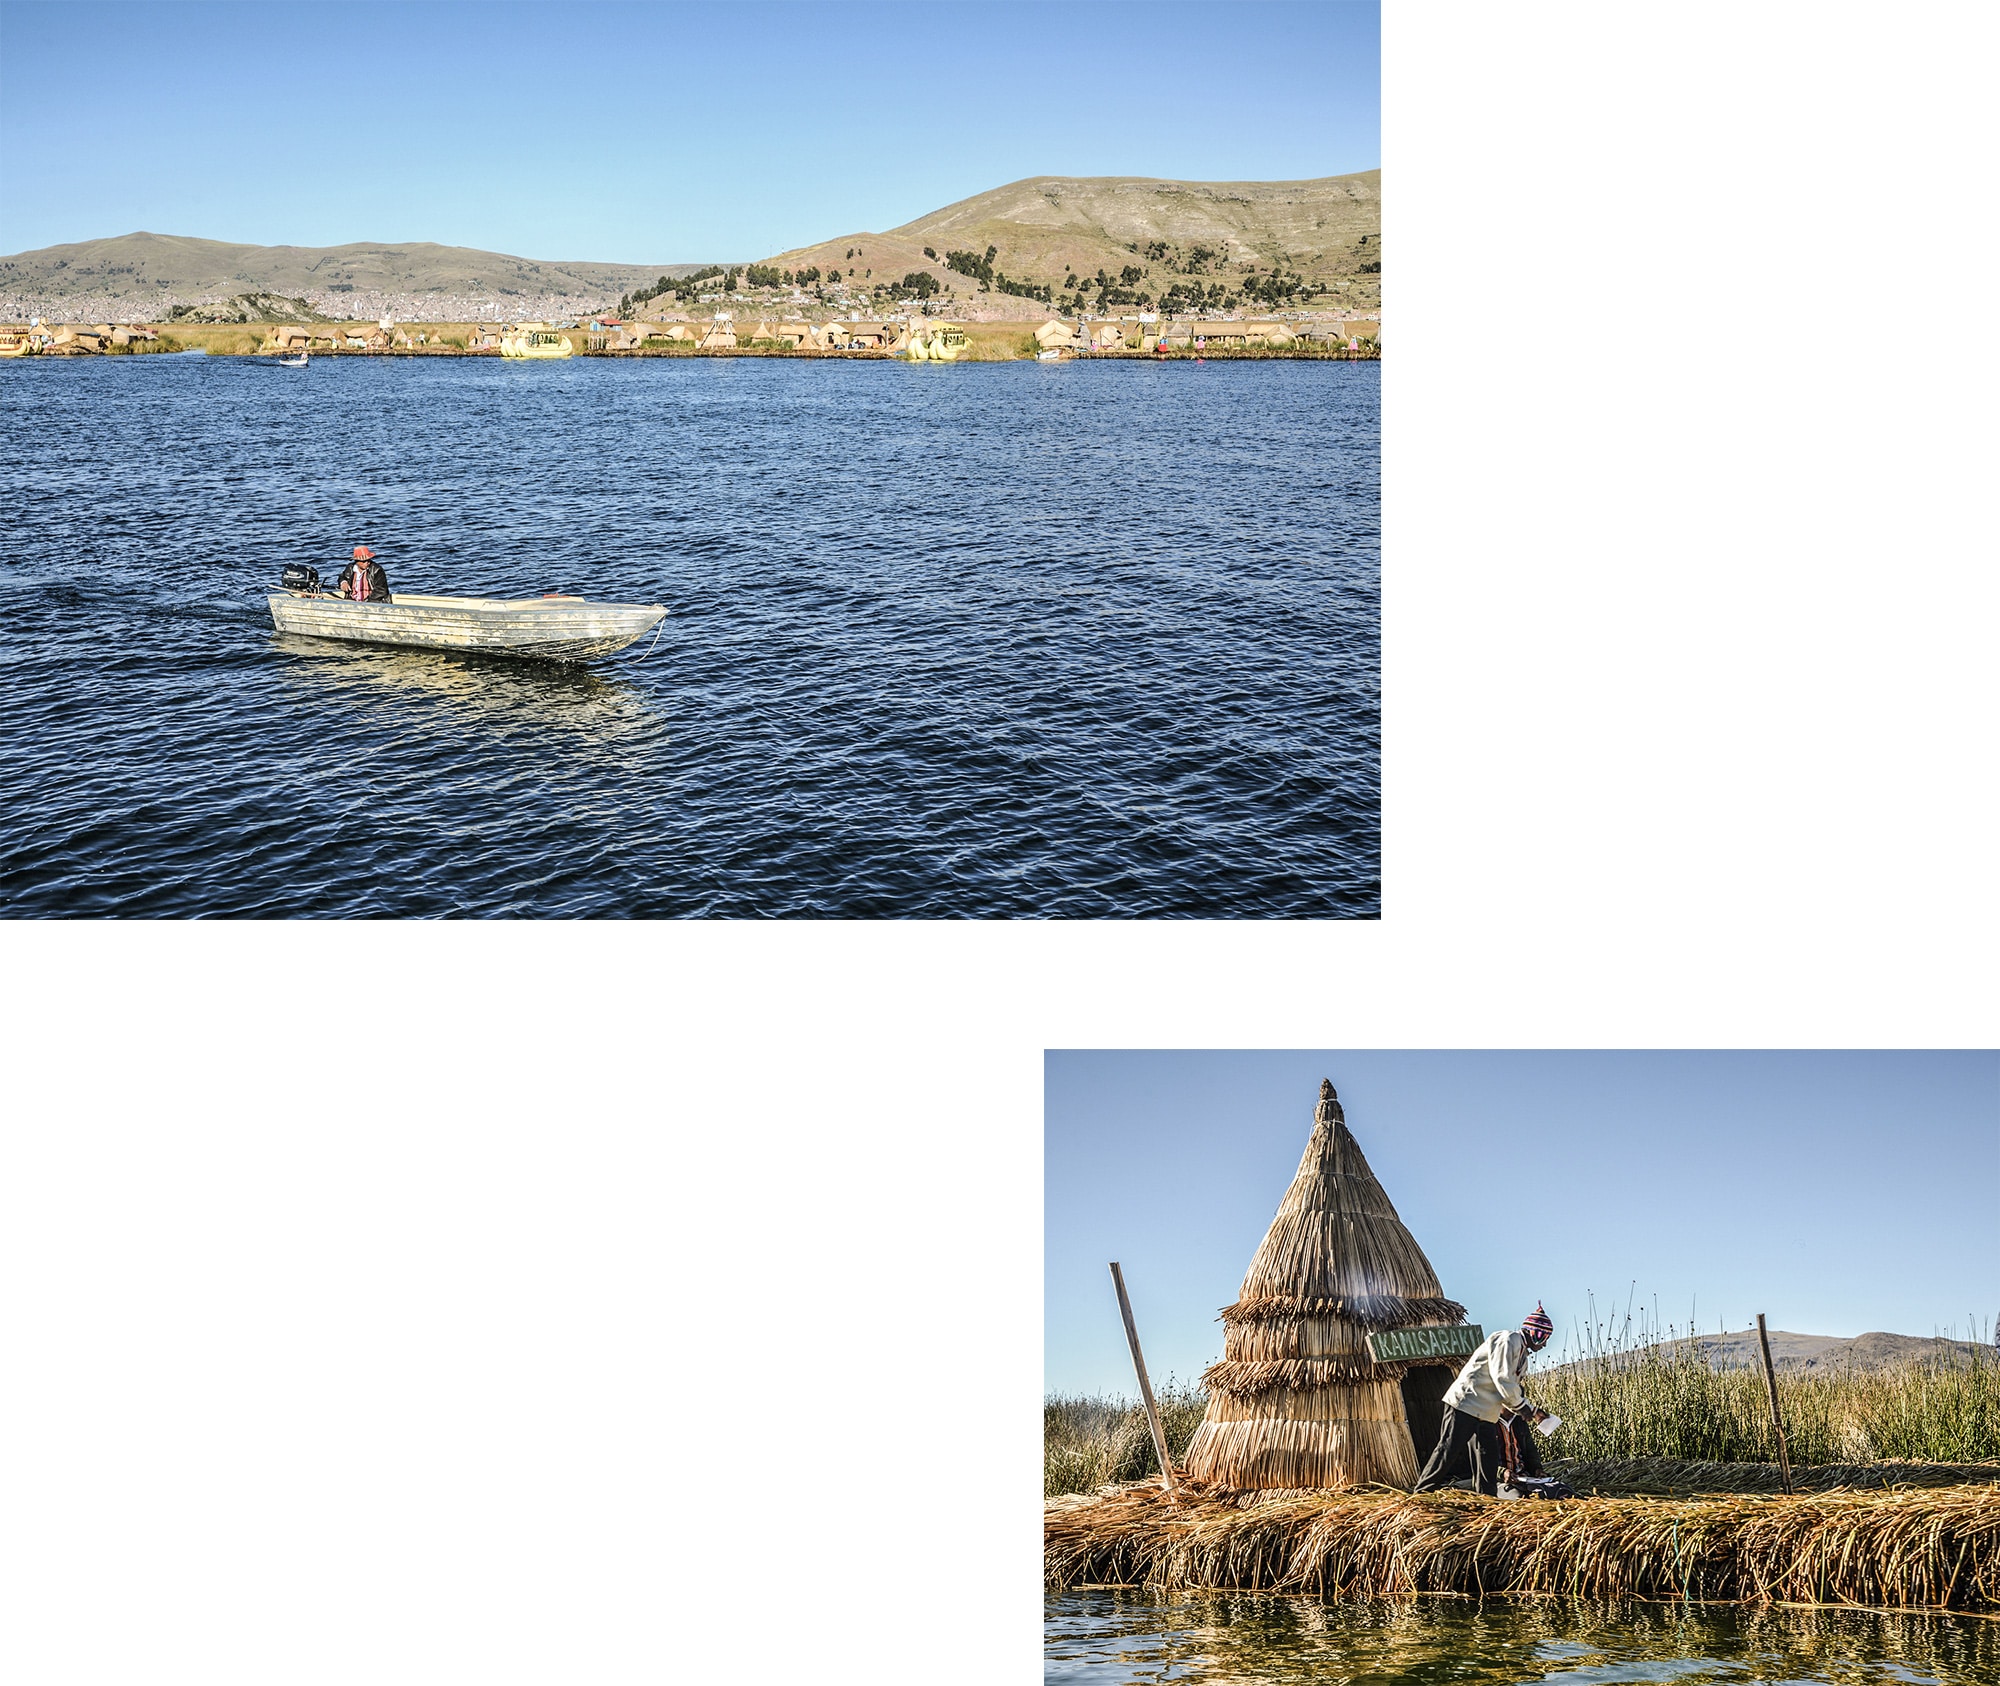 Le lac Titicaca et îles Uros au Pérou